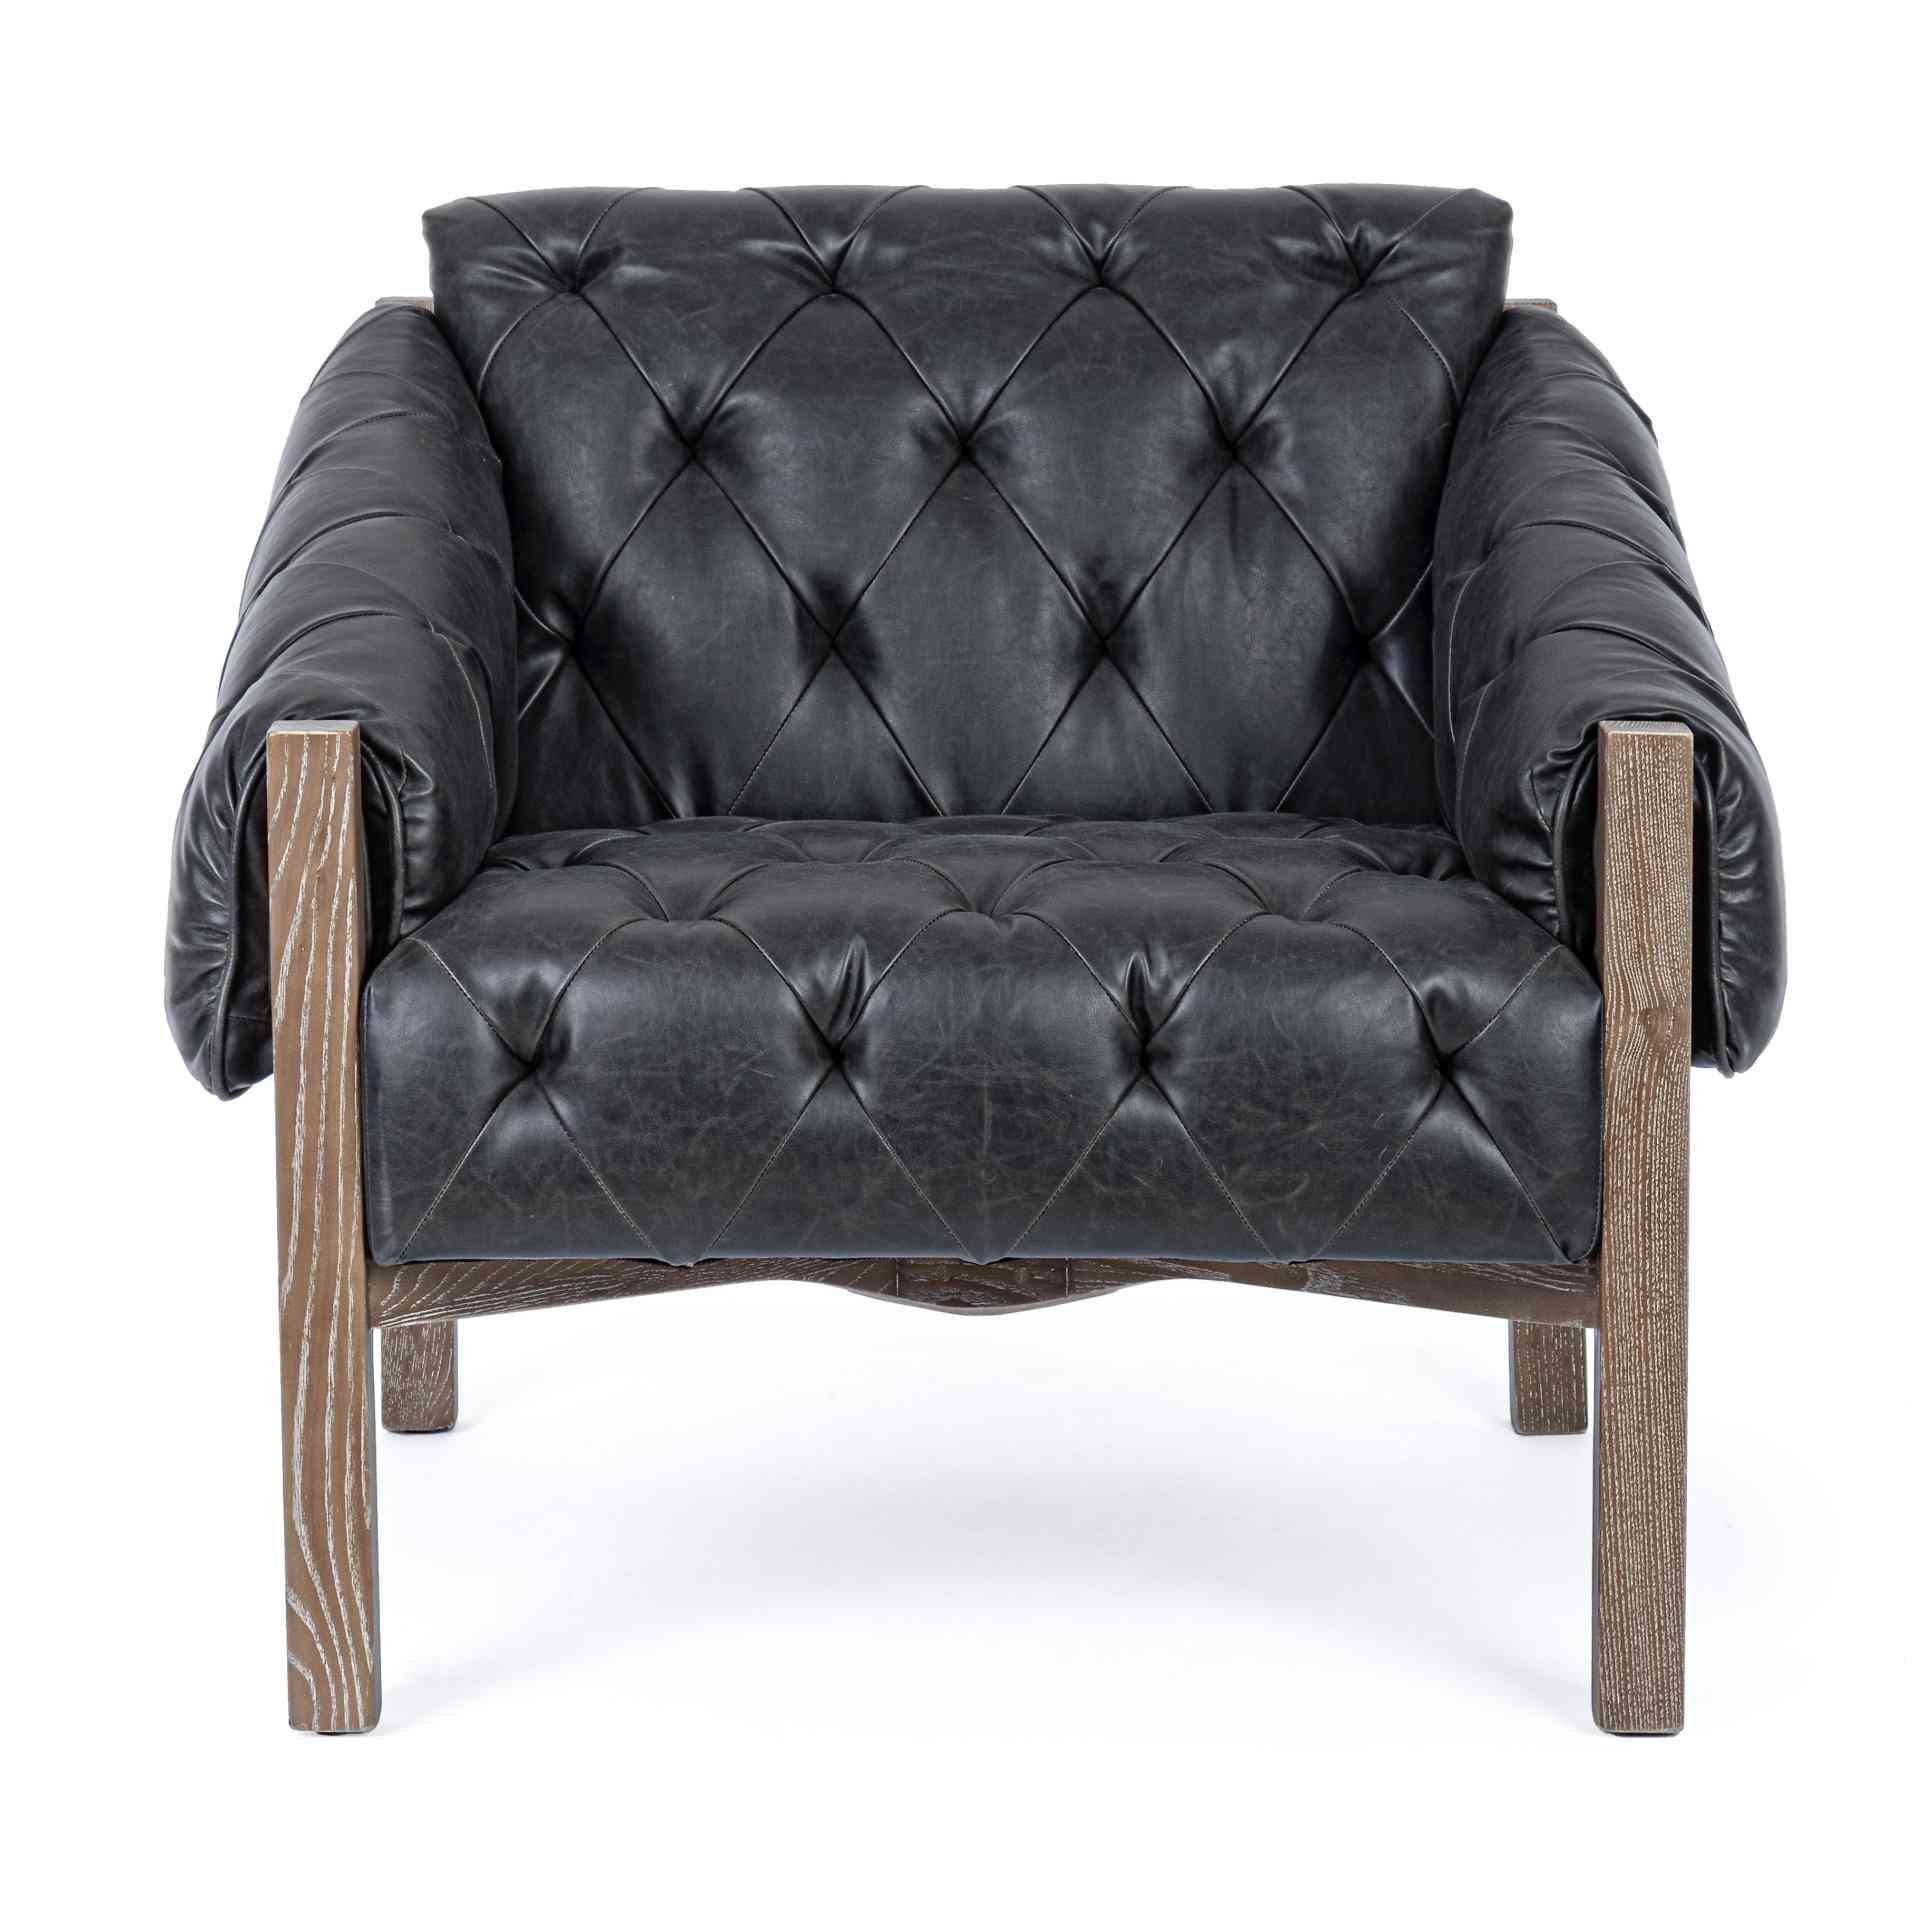 Der Sessel Harrison überzeugt mit seinem klassischen Design. Gefertigt wurde er aus Kunstleder, welches einen schwarzen Farbton besitzt. Das Gestell ist aus Eschenholz und hat eine natürliche Farbe. Der Sessel besitzt eine Sitzhöhe von 45 cm. Die Breite b